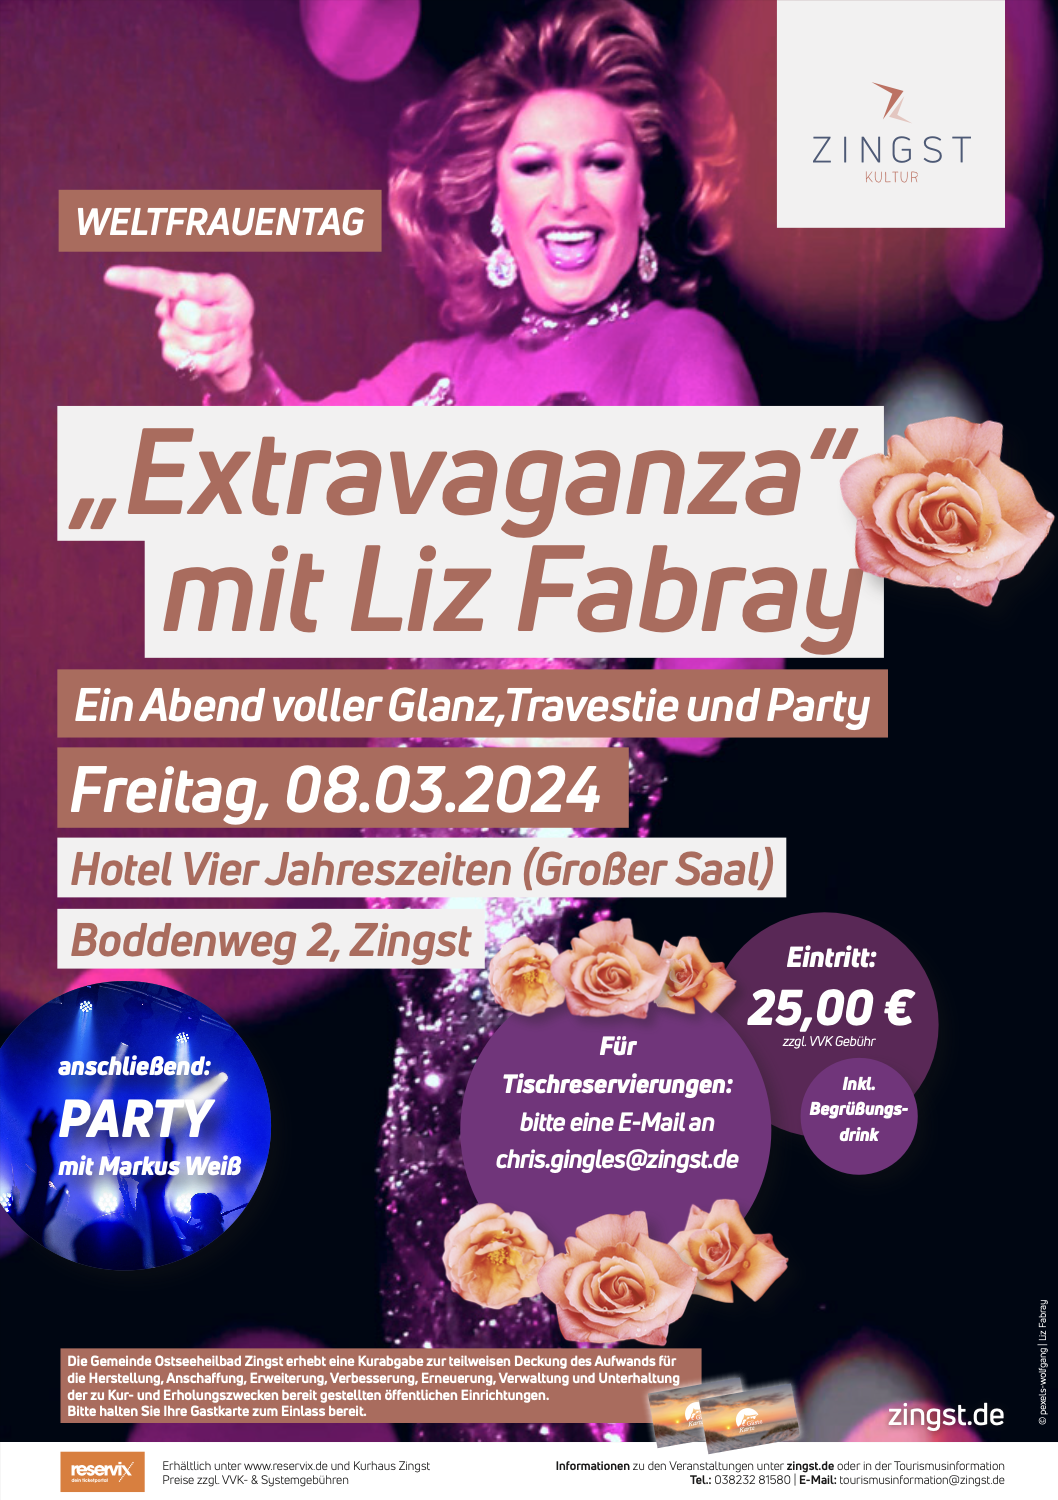 Blogeintrag: Zingst: Frauentag am 08.03.2024, im Hotel Vier Jahreszeiten, „Extravaganza mit Liz Fabry“